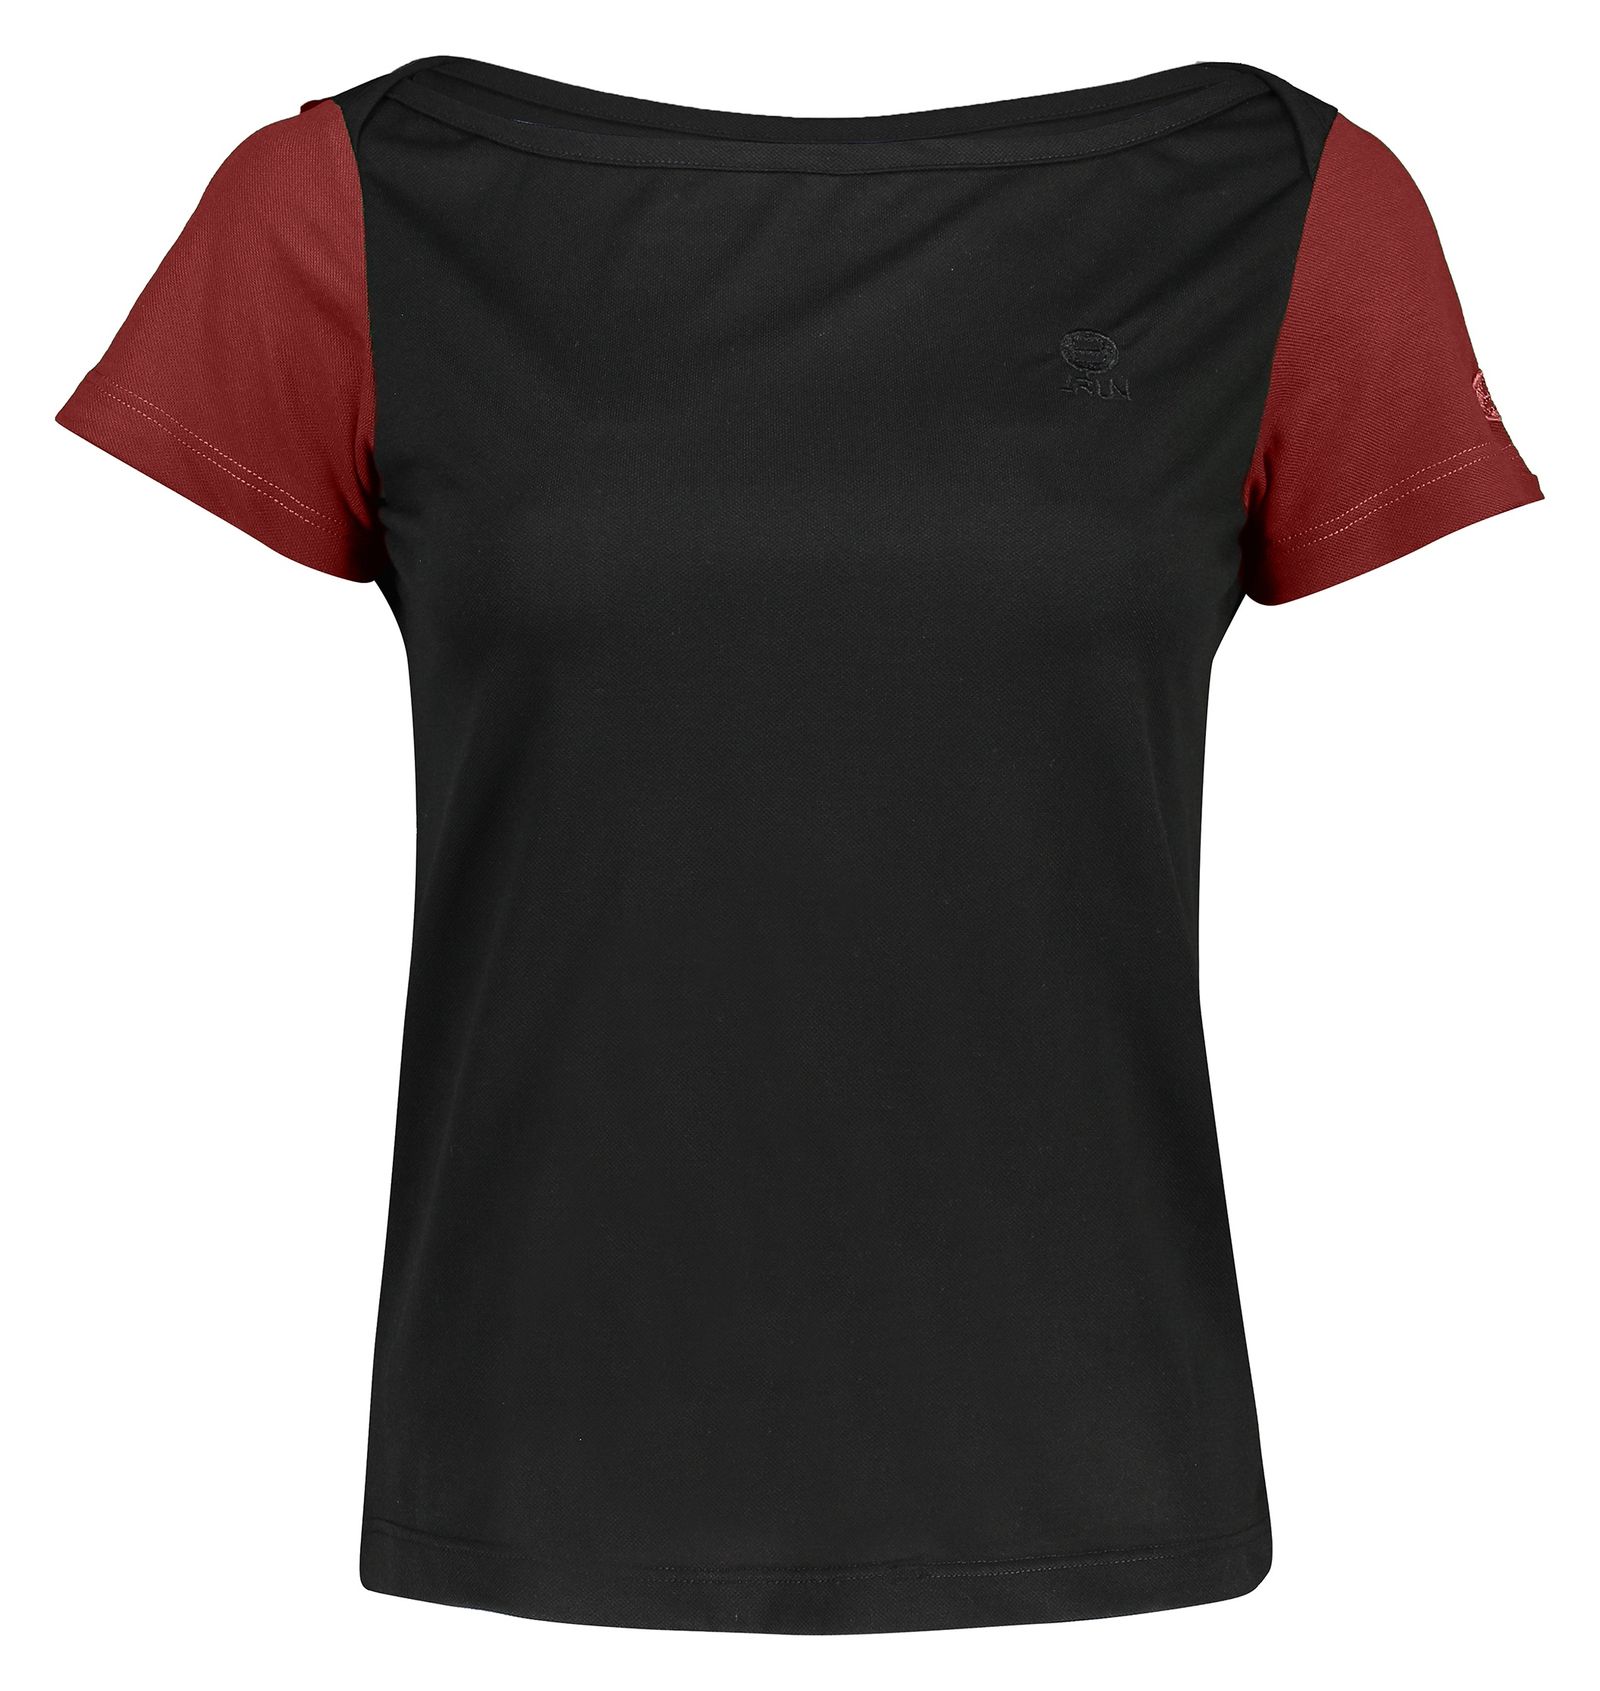 تی شرت ورزشی زنانه بی فور ران مدل 970324-9974 - مشکی زرشکی - 1